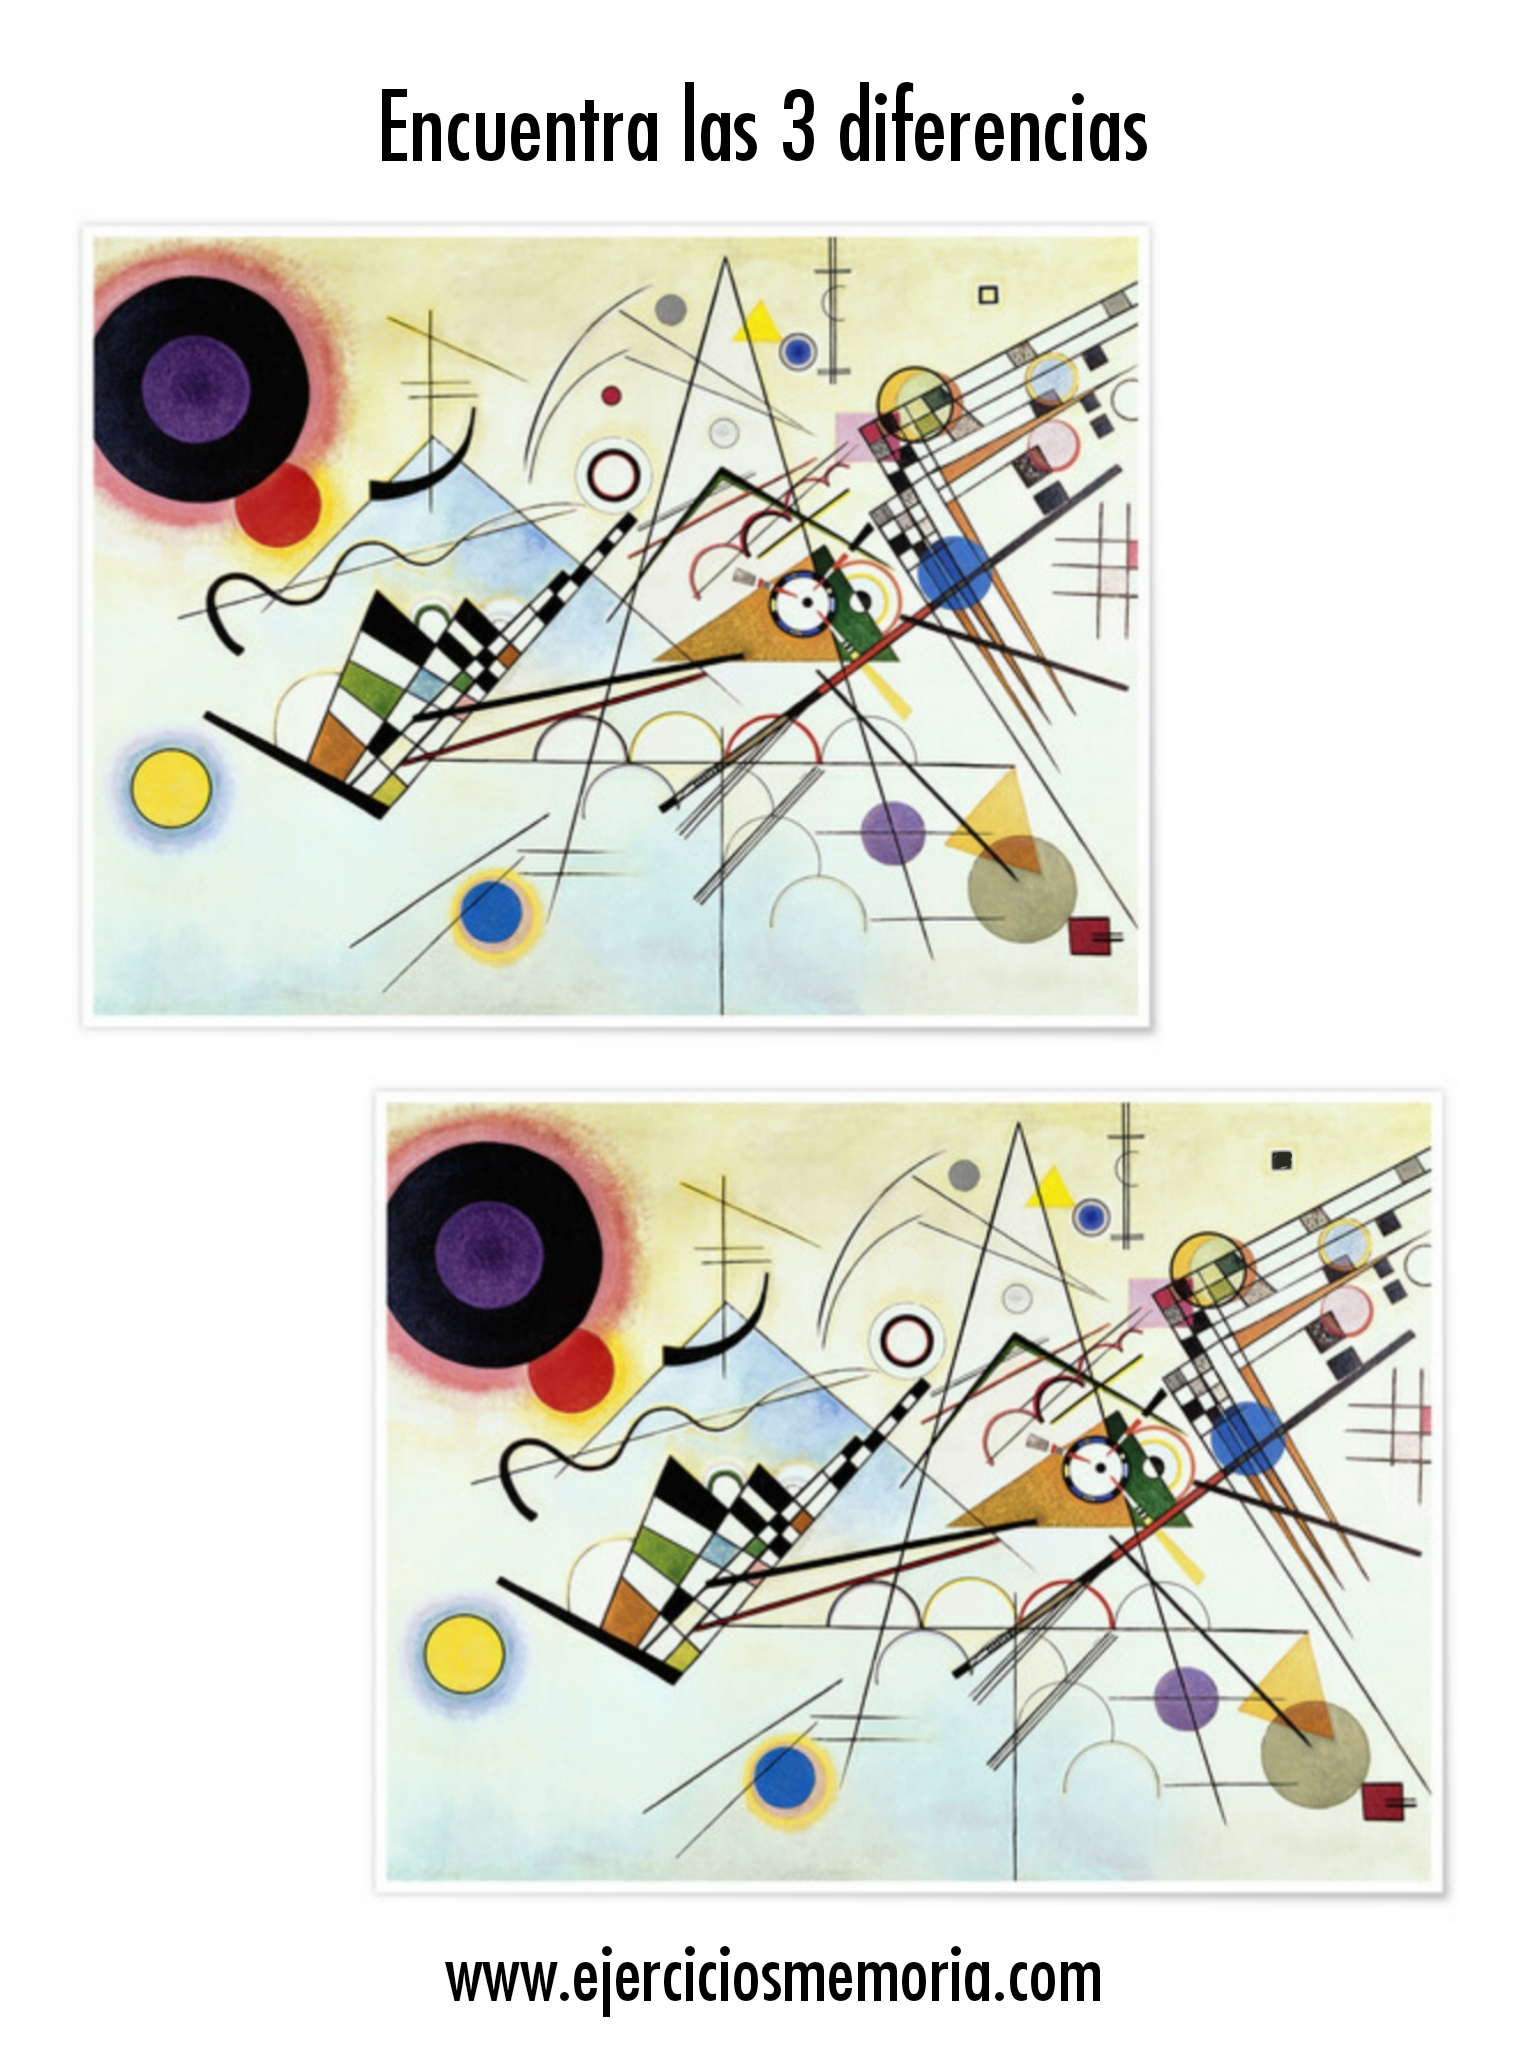 Encuentra las 3 diferencias en este cuadro de Kandinsky